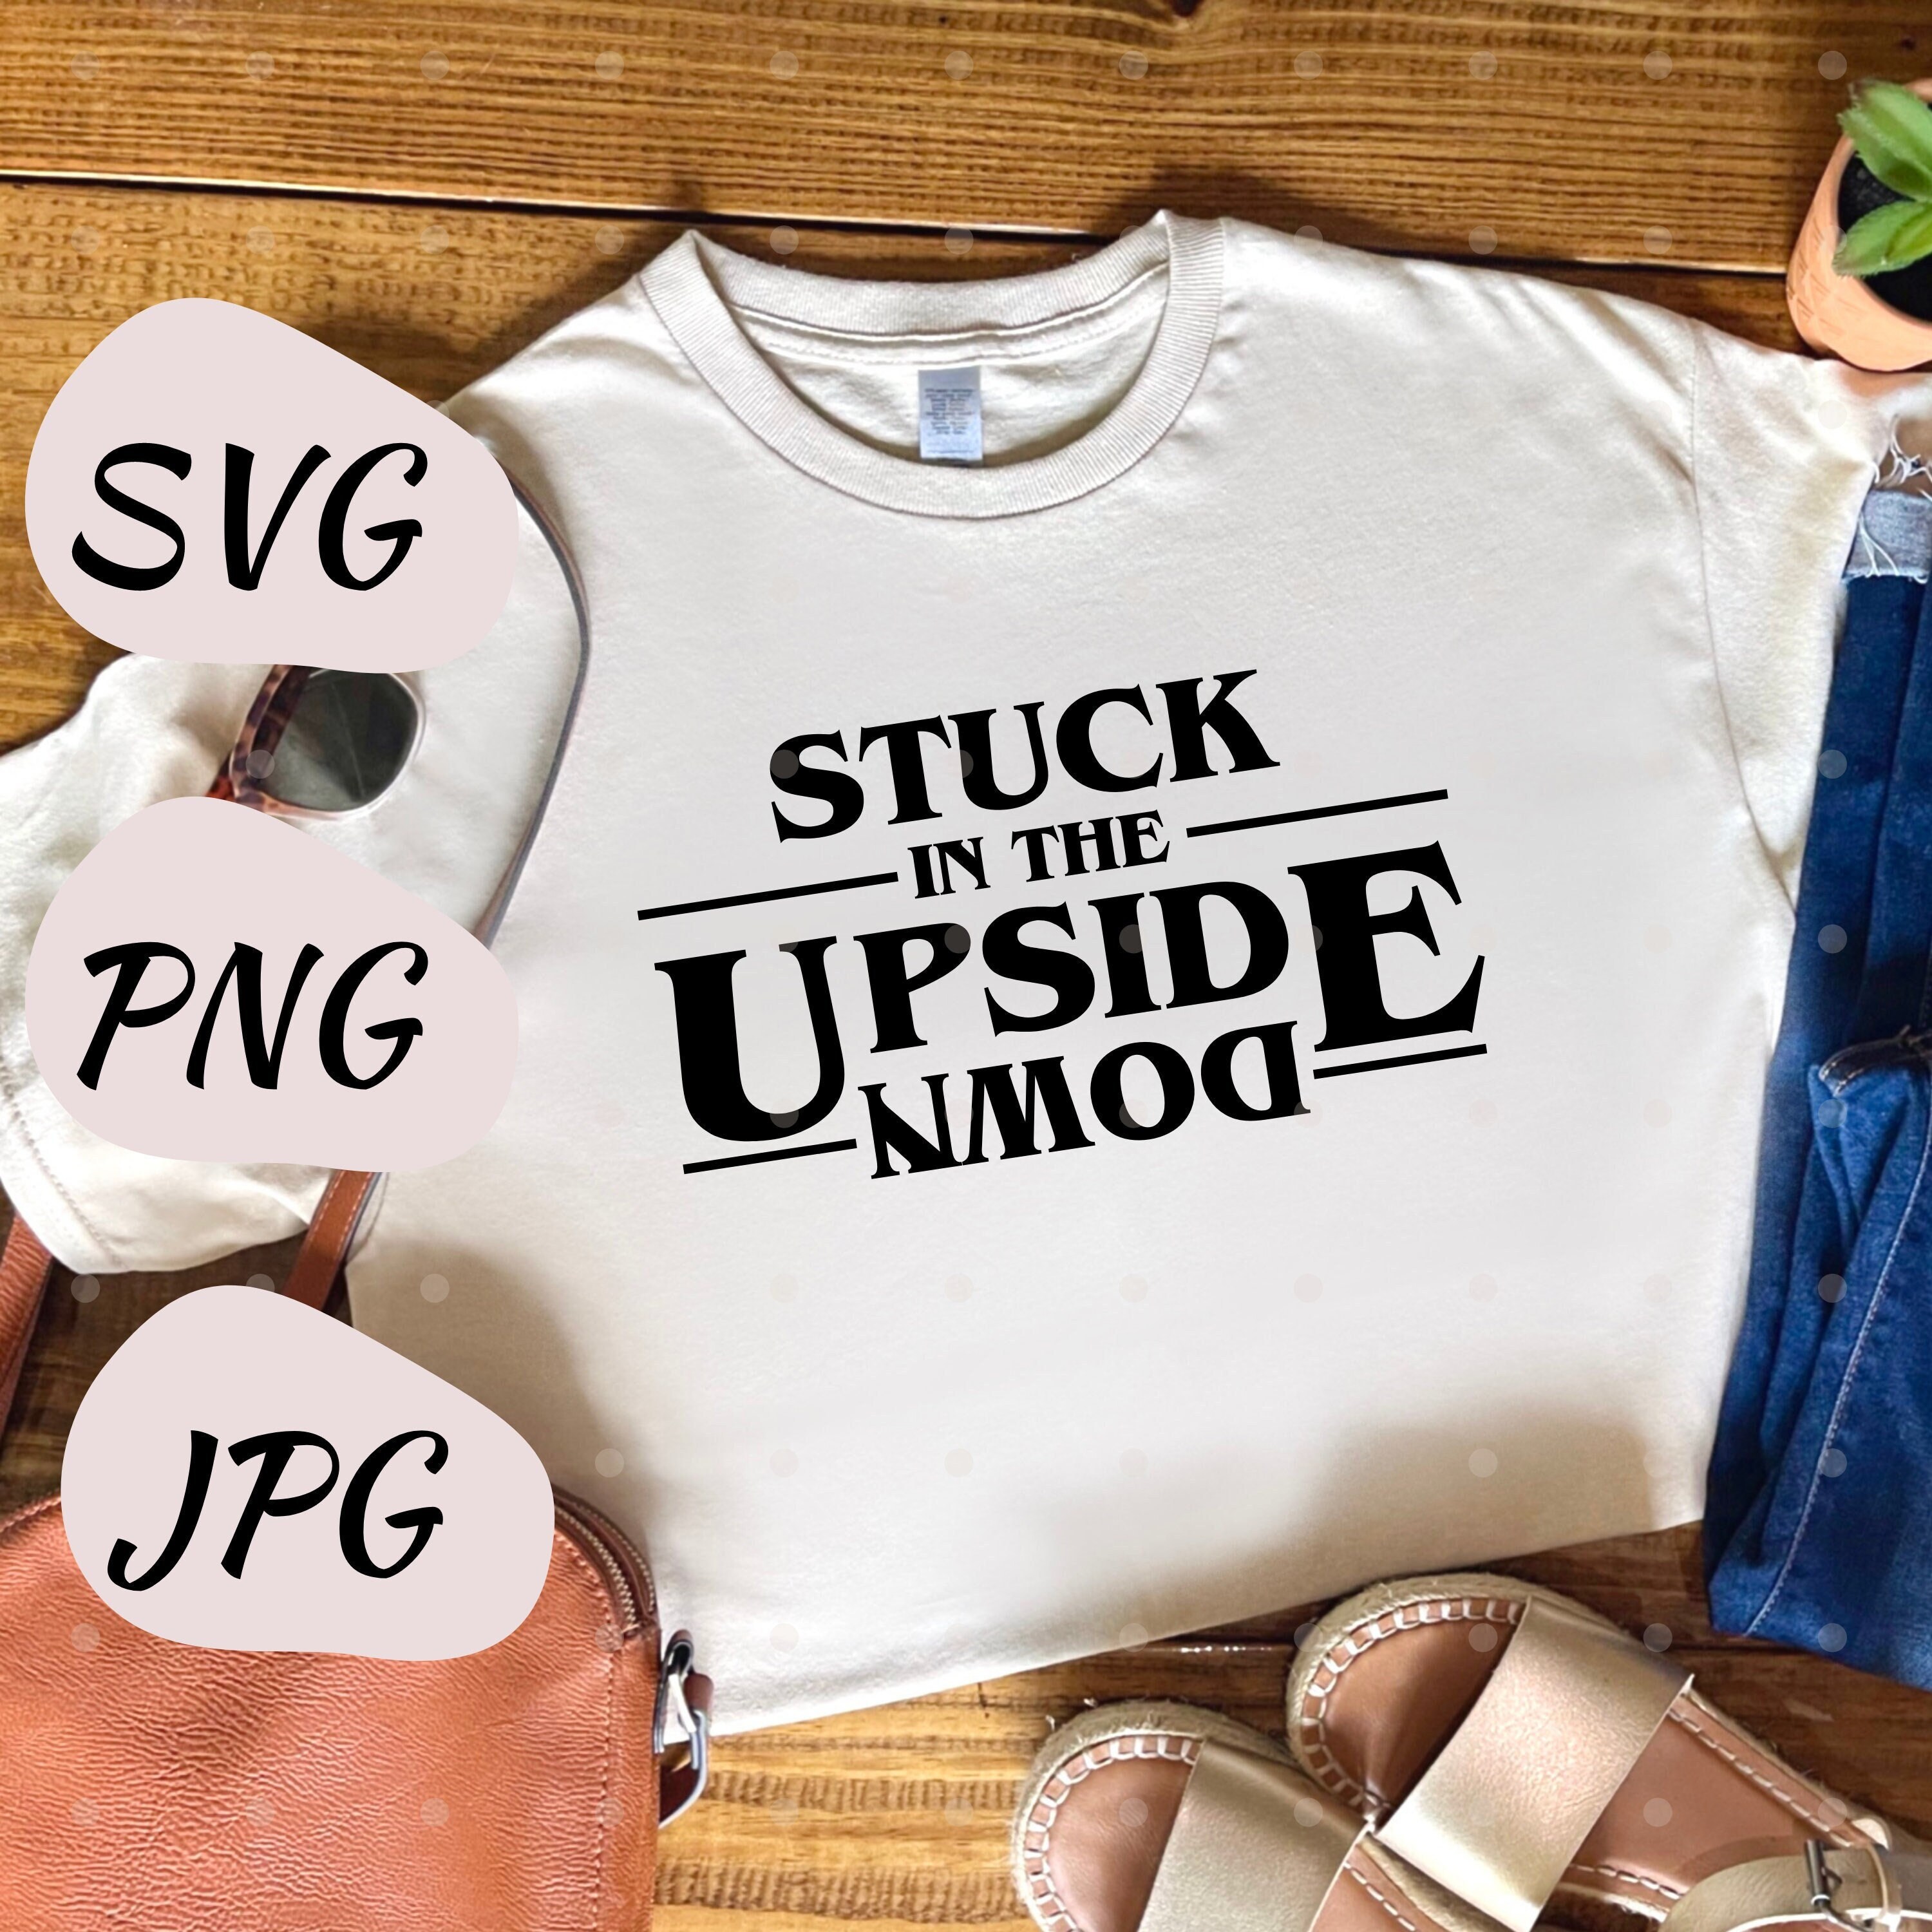 in Upside Down // Stranger // PNG JPG - Etsy